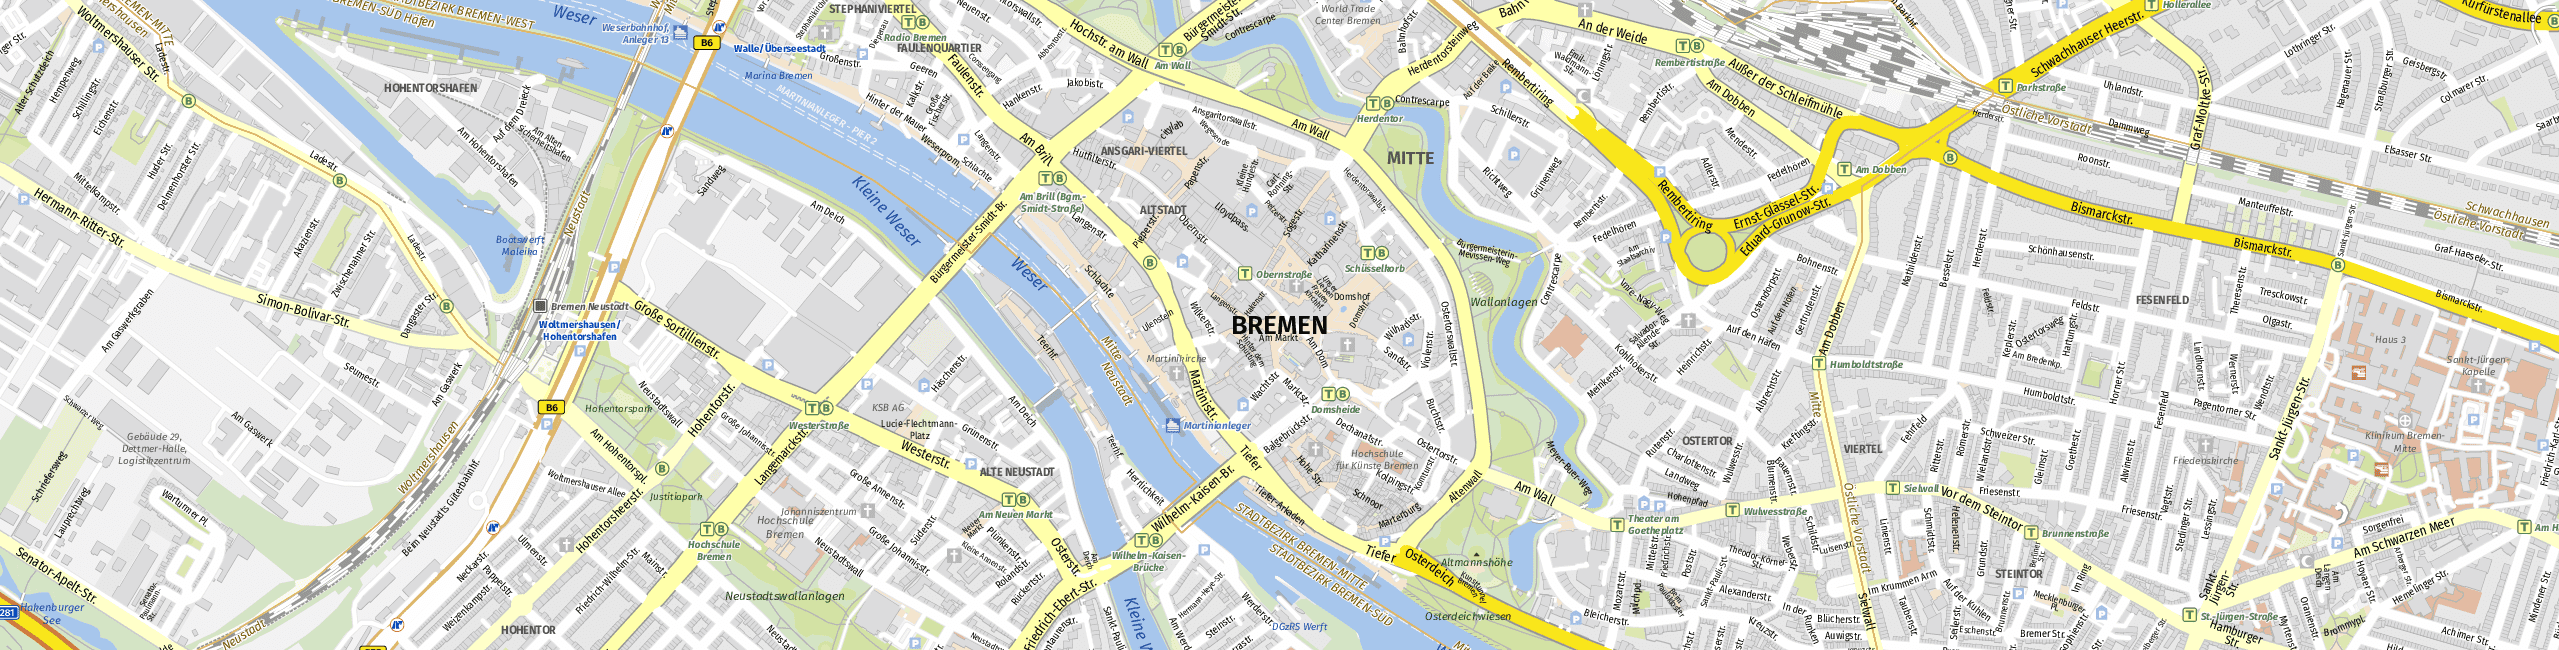 Stadtplan Bremen zum Downloaden.